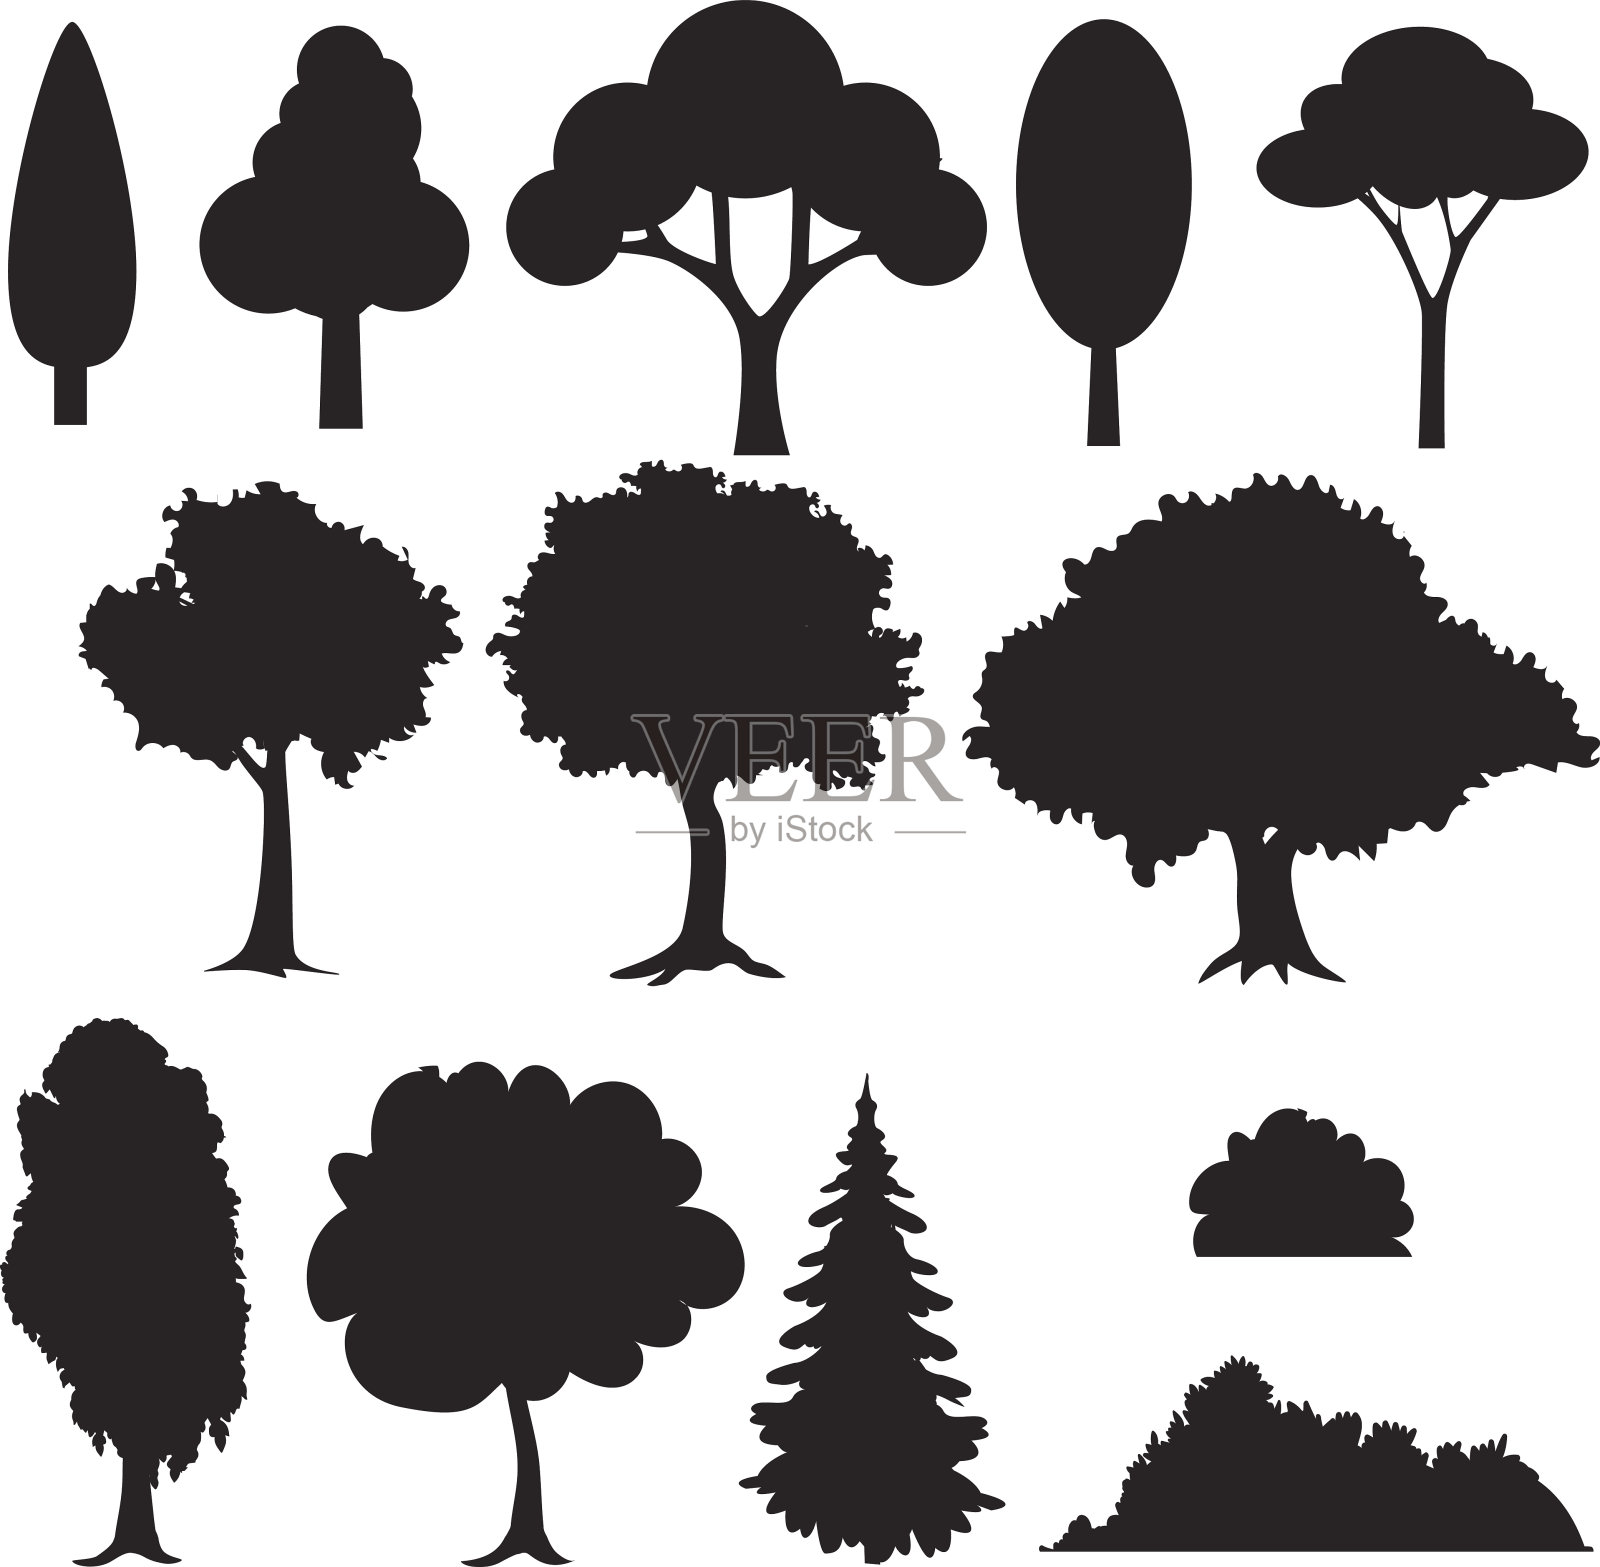 一组各种风格化的树木剪影。插画图片素材